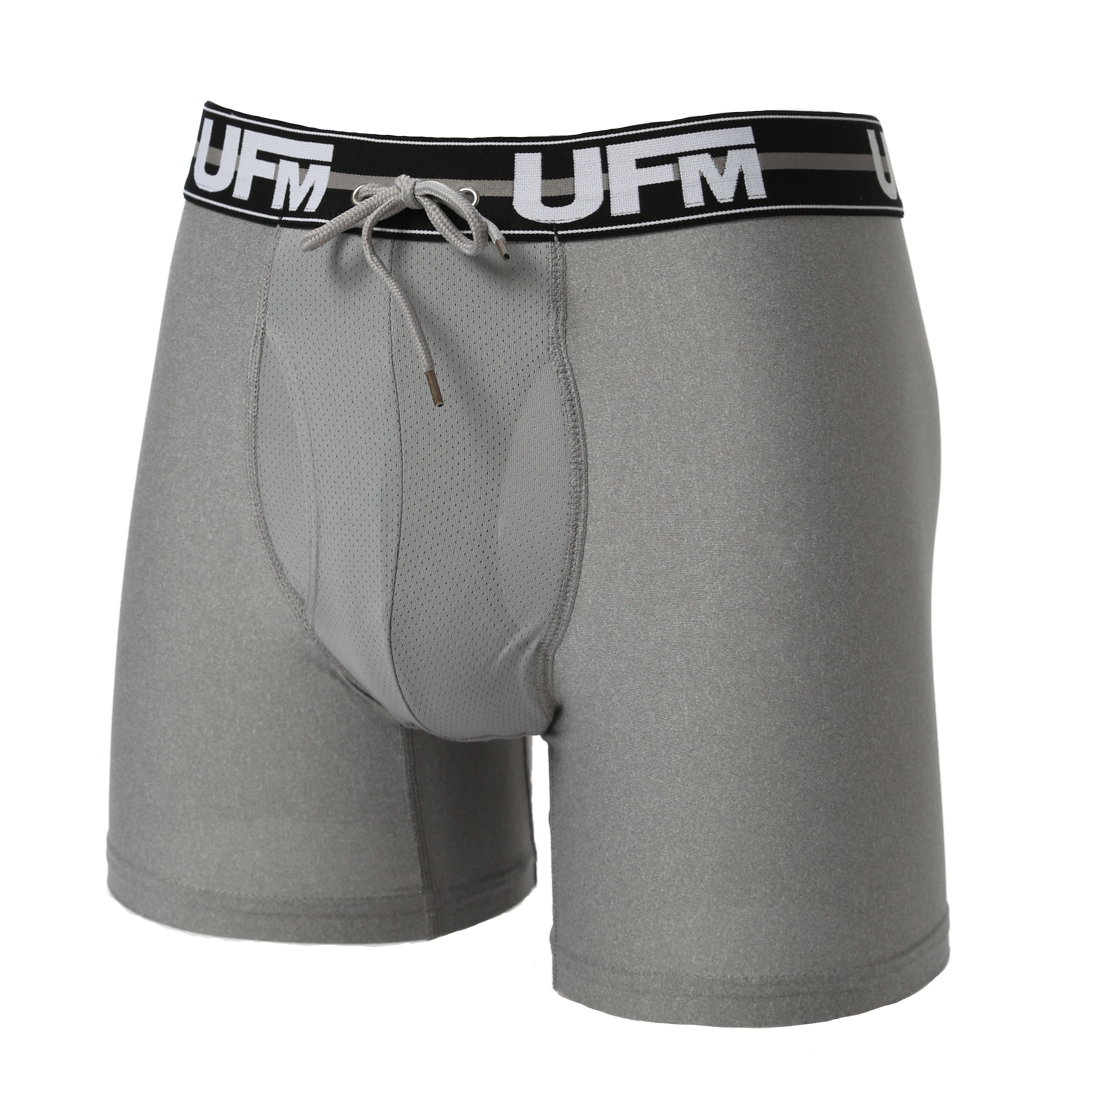 Parent UFM Underwear for Men Work Polyester 6 inch Original Max Boxer Brief Gray 800